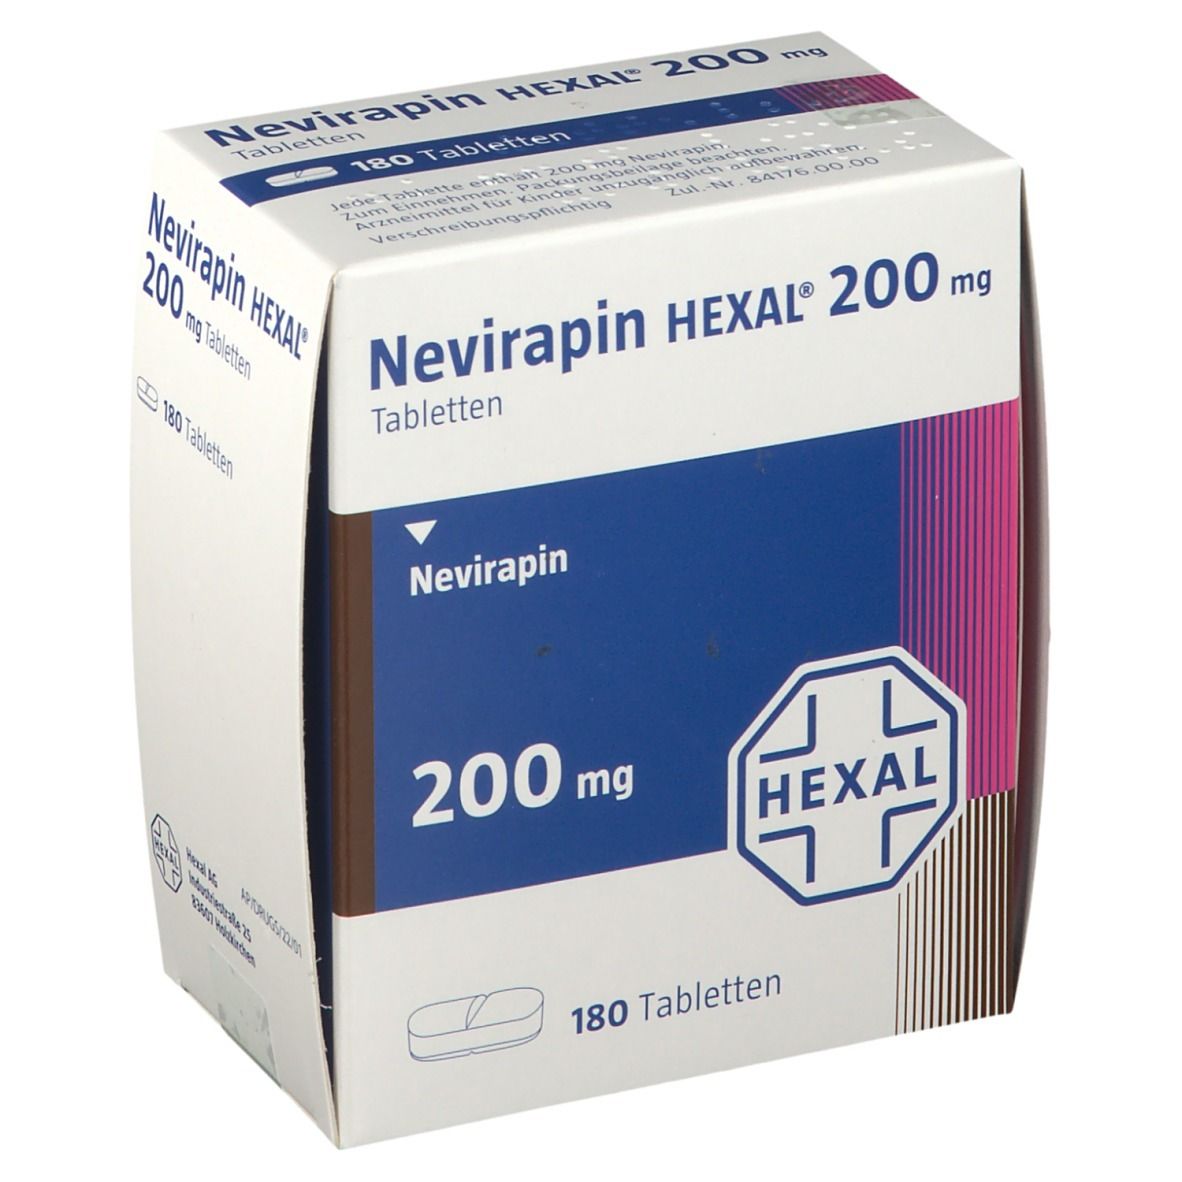 Nevirapin HEXAL® 200 mg